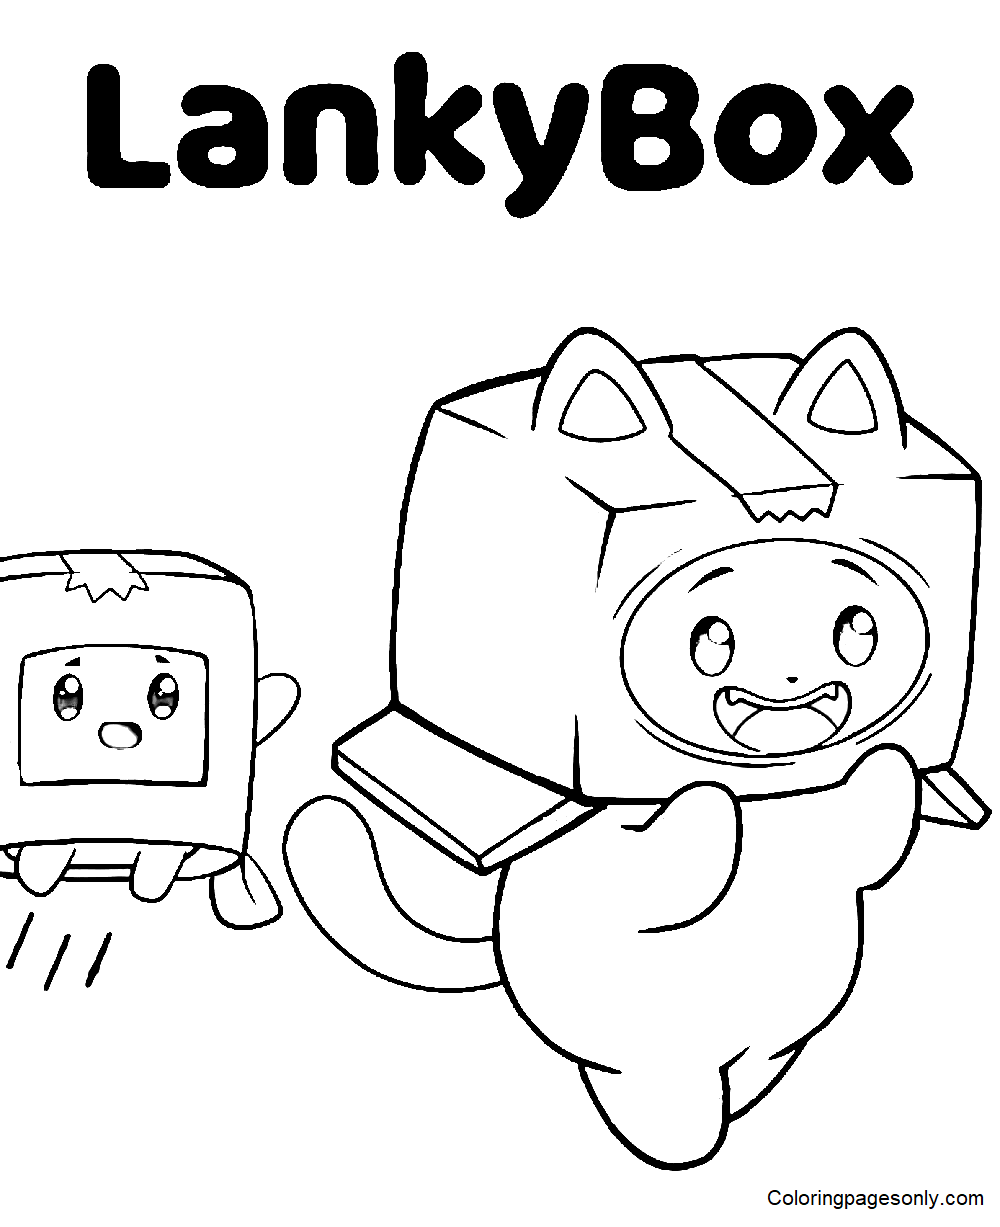 Hojas imprimibles de LankyBox para colorear